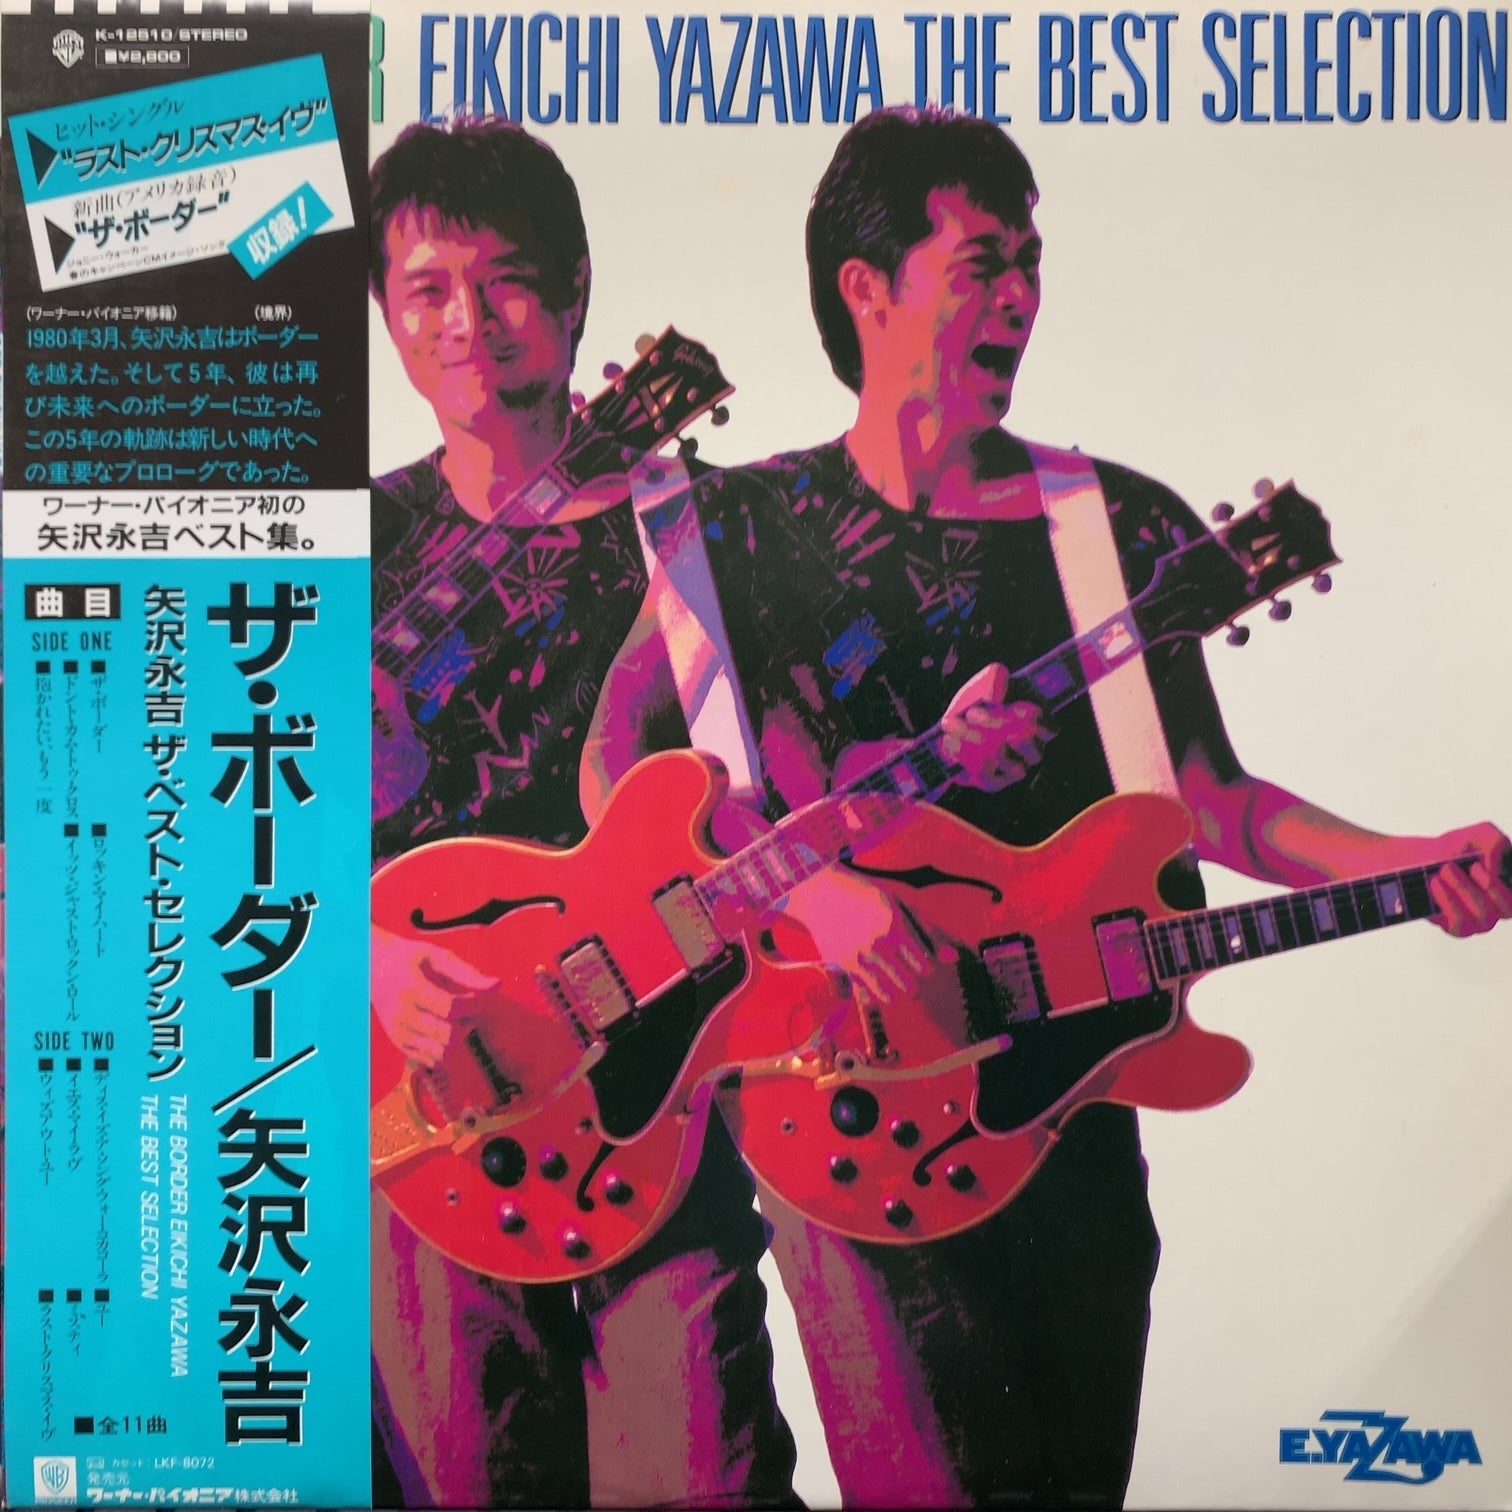 矢沢永吉 / The Border - Eikichi Yazawa The Best Selection (K-12510